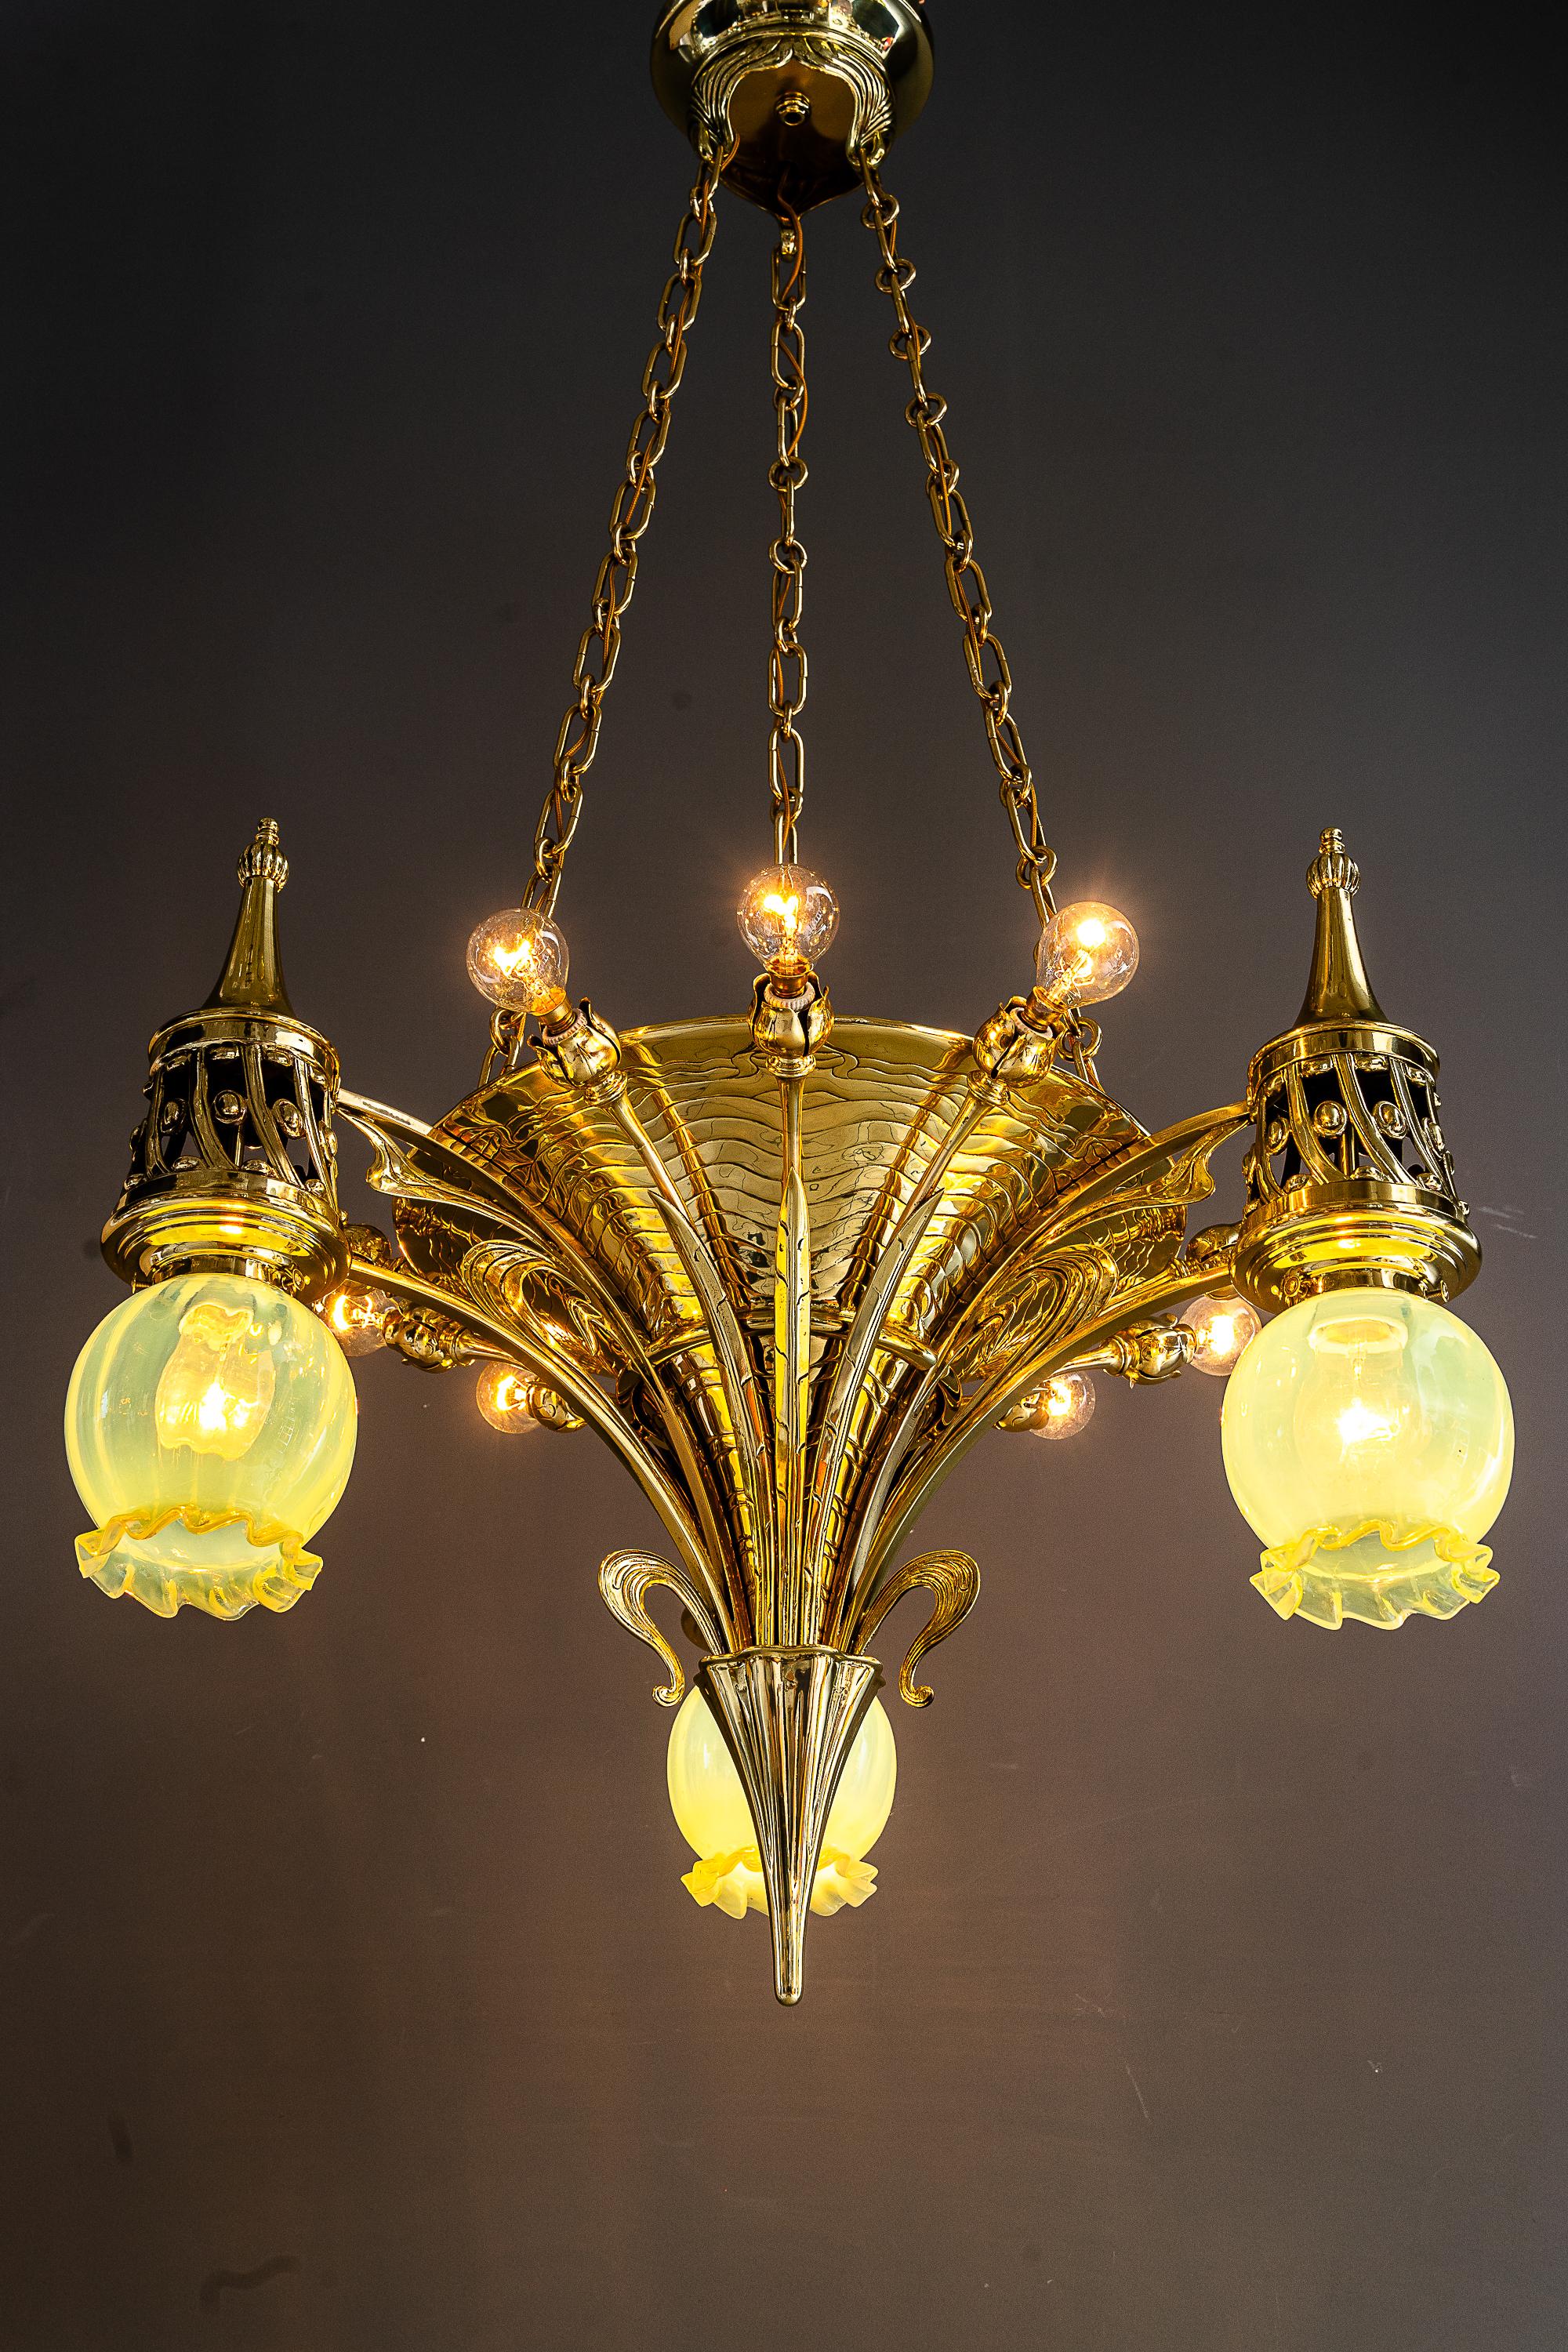 Seltener Jugendstil-Kronleuchter mit Opalglasschirmen Vienna aus der Zeit um 1908 
Messing poliert und emailliert
Original Opalglasschirme
12 Glühbirnen